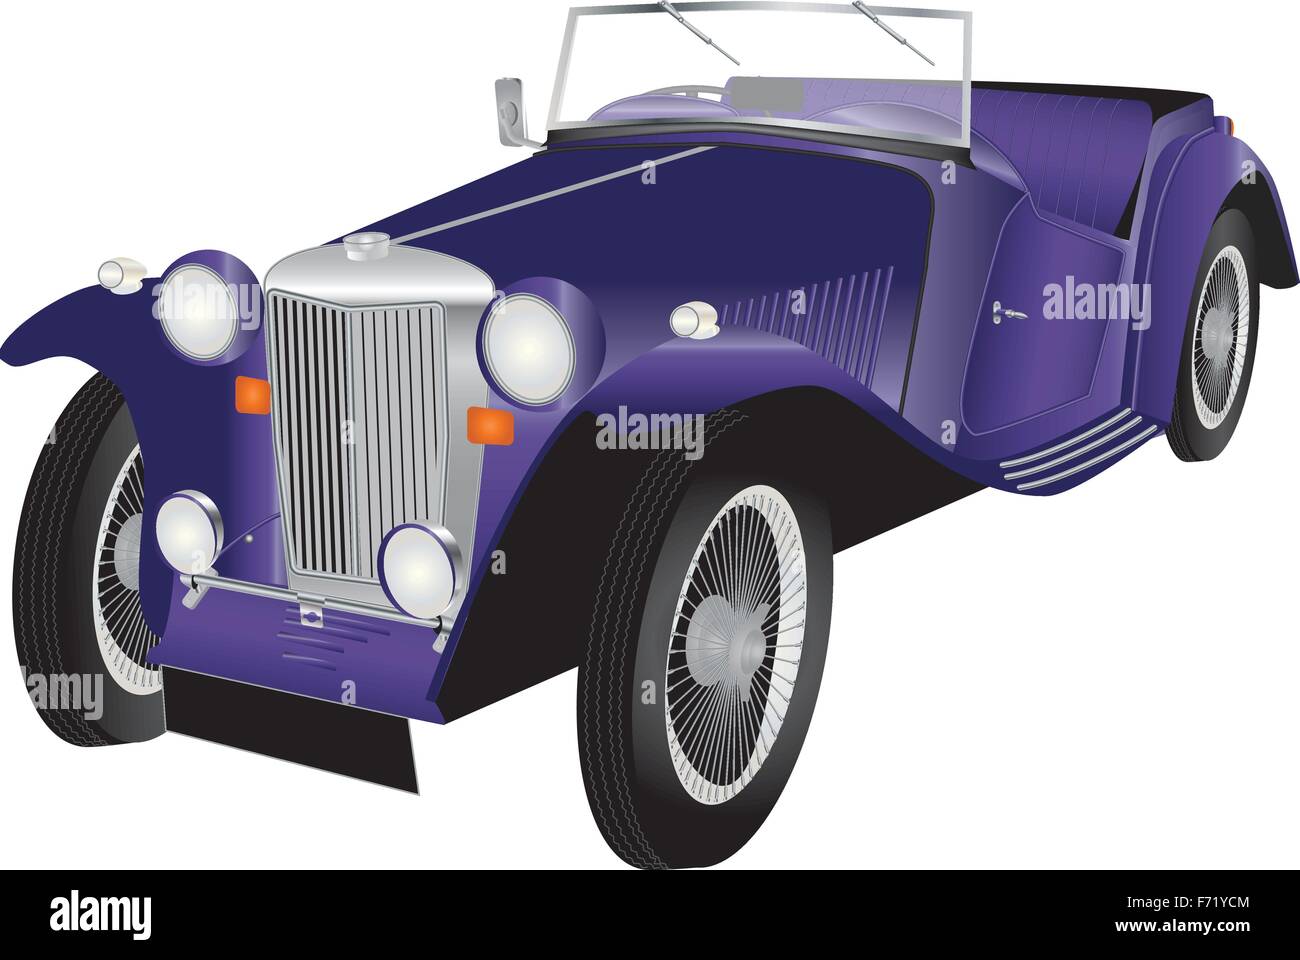 Une illustration détaillée d'une voiture de sport Vintage violet avec chrome poli et raccords pneumatiques à rayons de fil isolé sur blanc Illustration de Vecteur